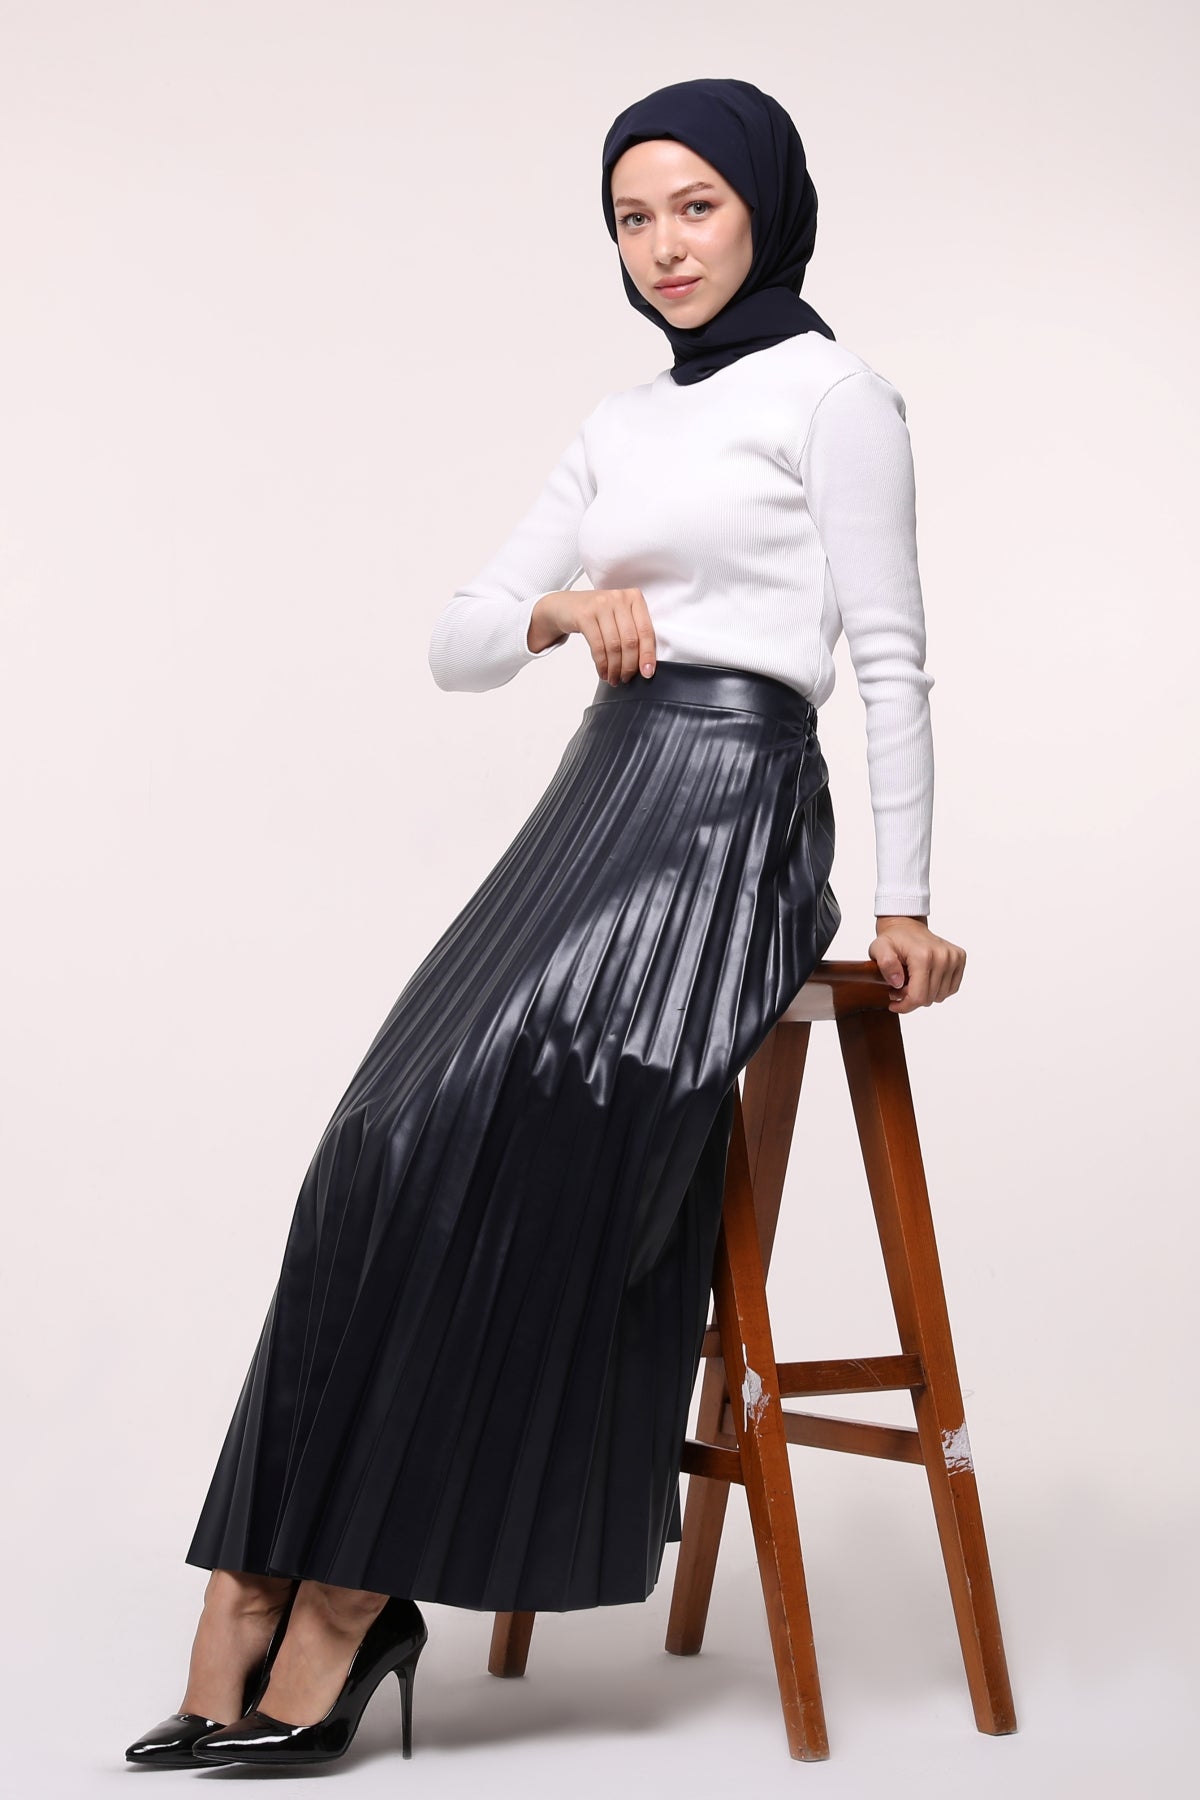 Leather skirt - ETK001 - Navy